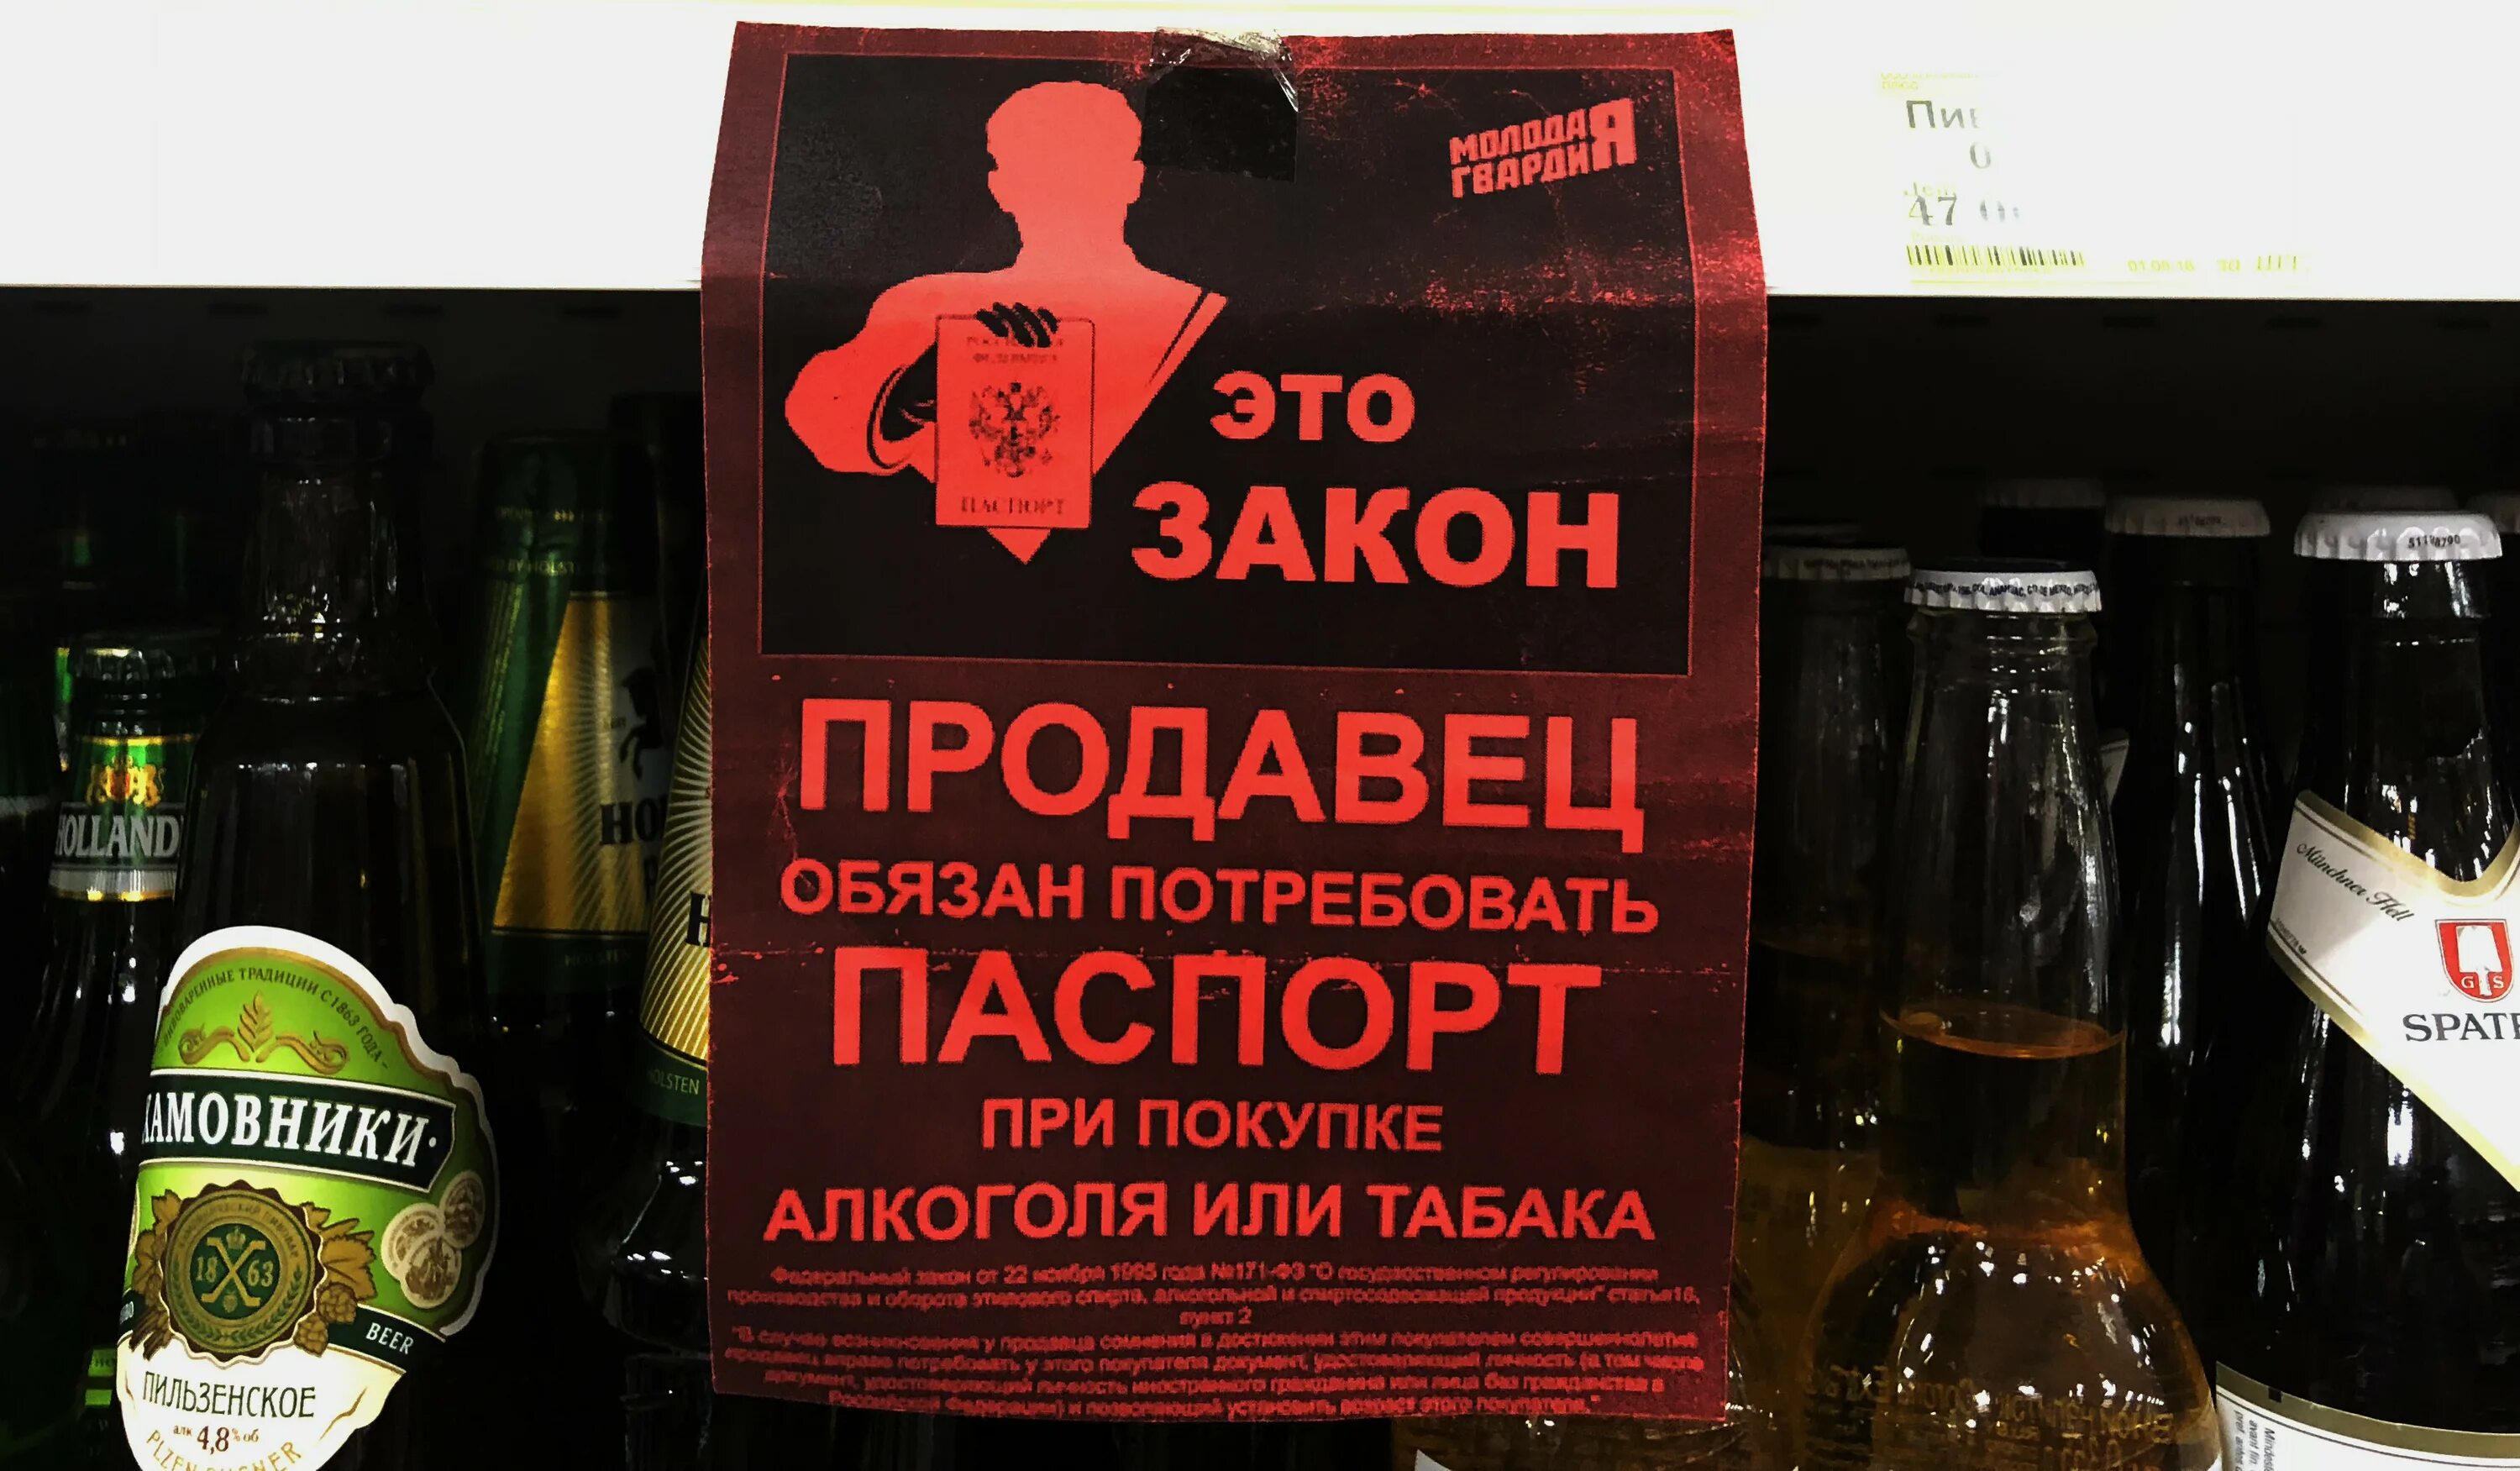 Объявление о продаже алкогольных напитков.